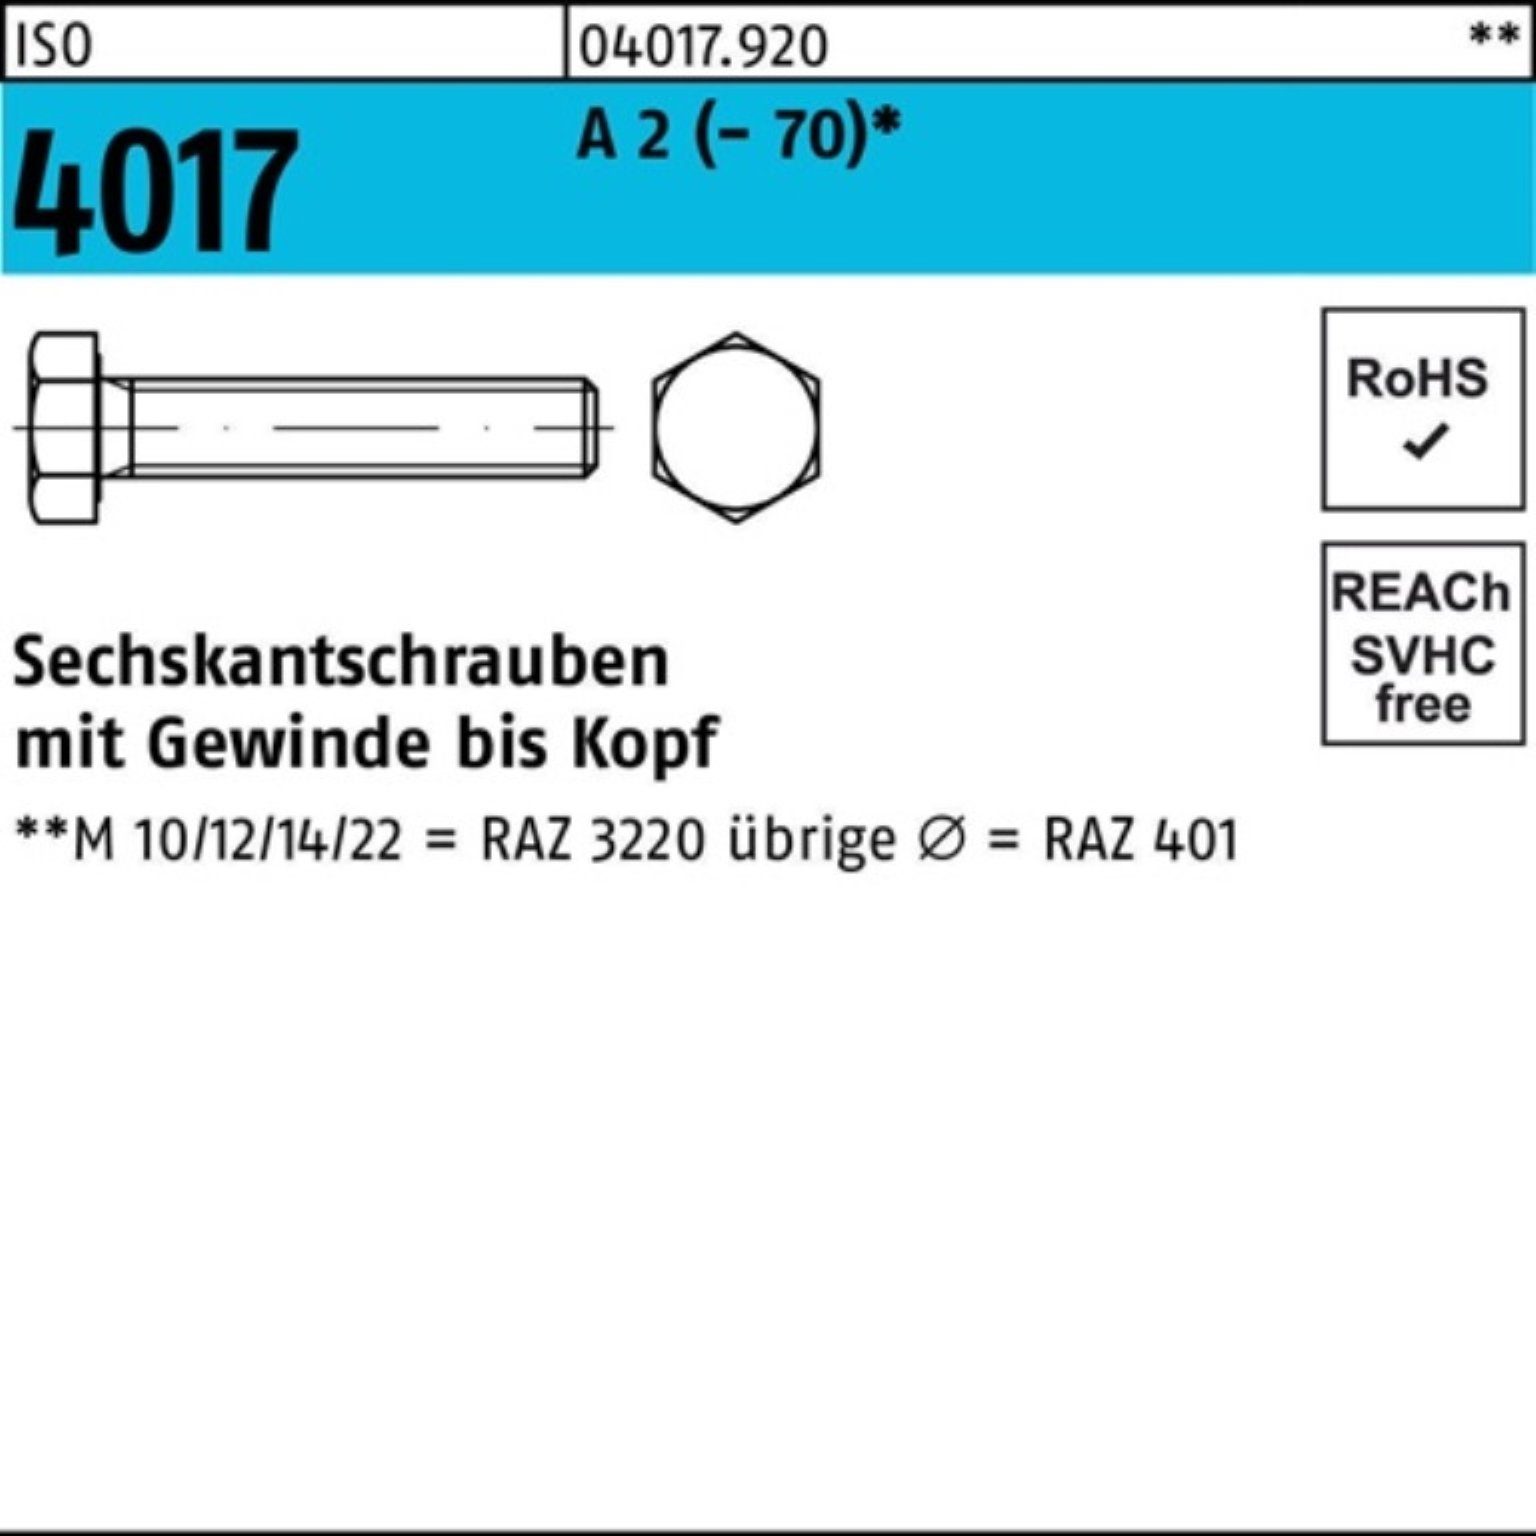 Bufab Sechskantschraube 100er Pack Sechskantschraube ISO 4017 VG M8x 200 A 2 (70) 50 Stück